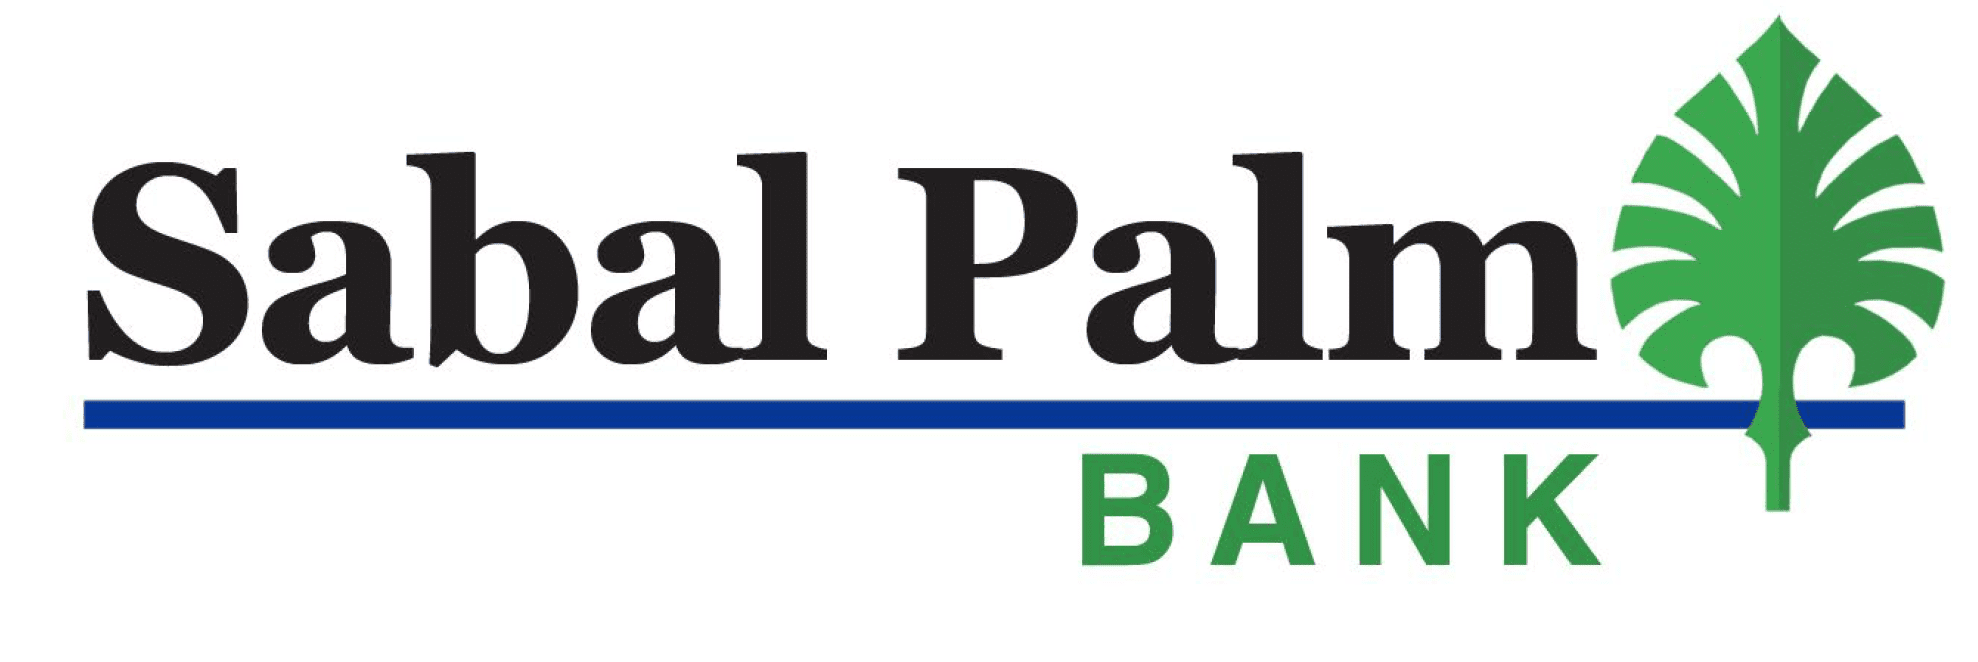 Image of Sabal Palm Bank